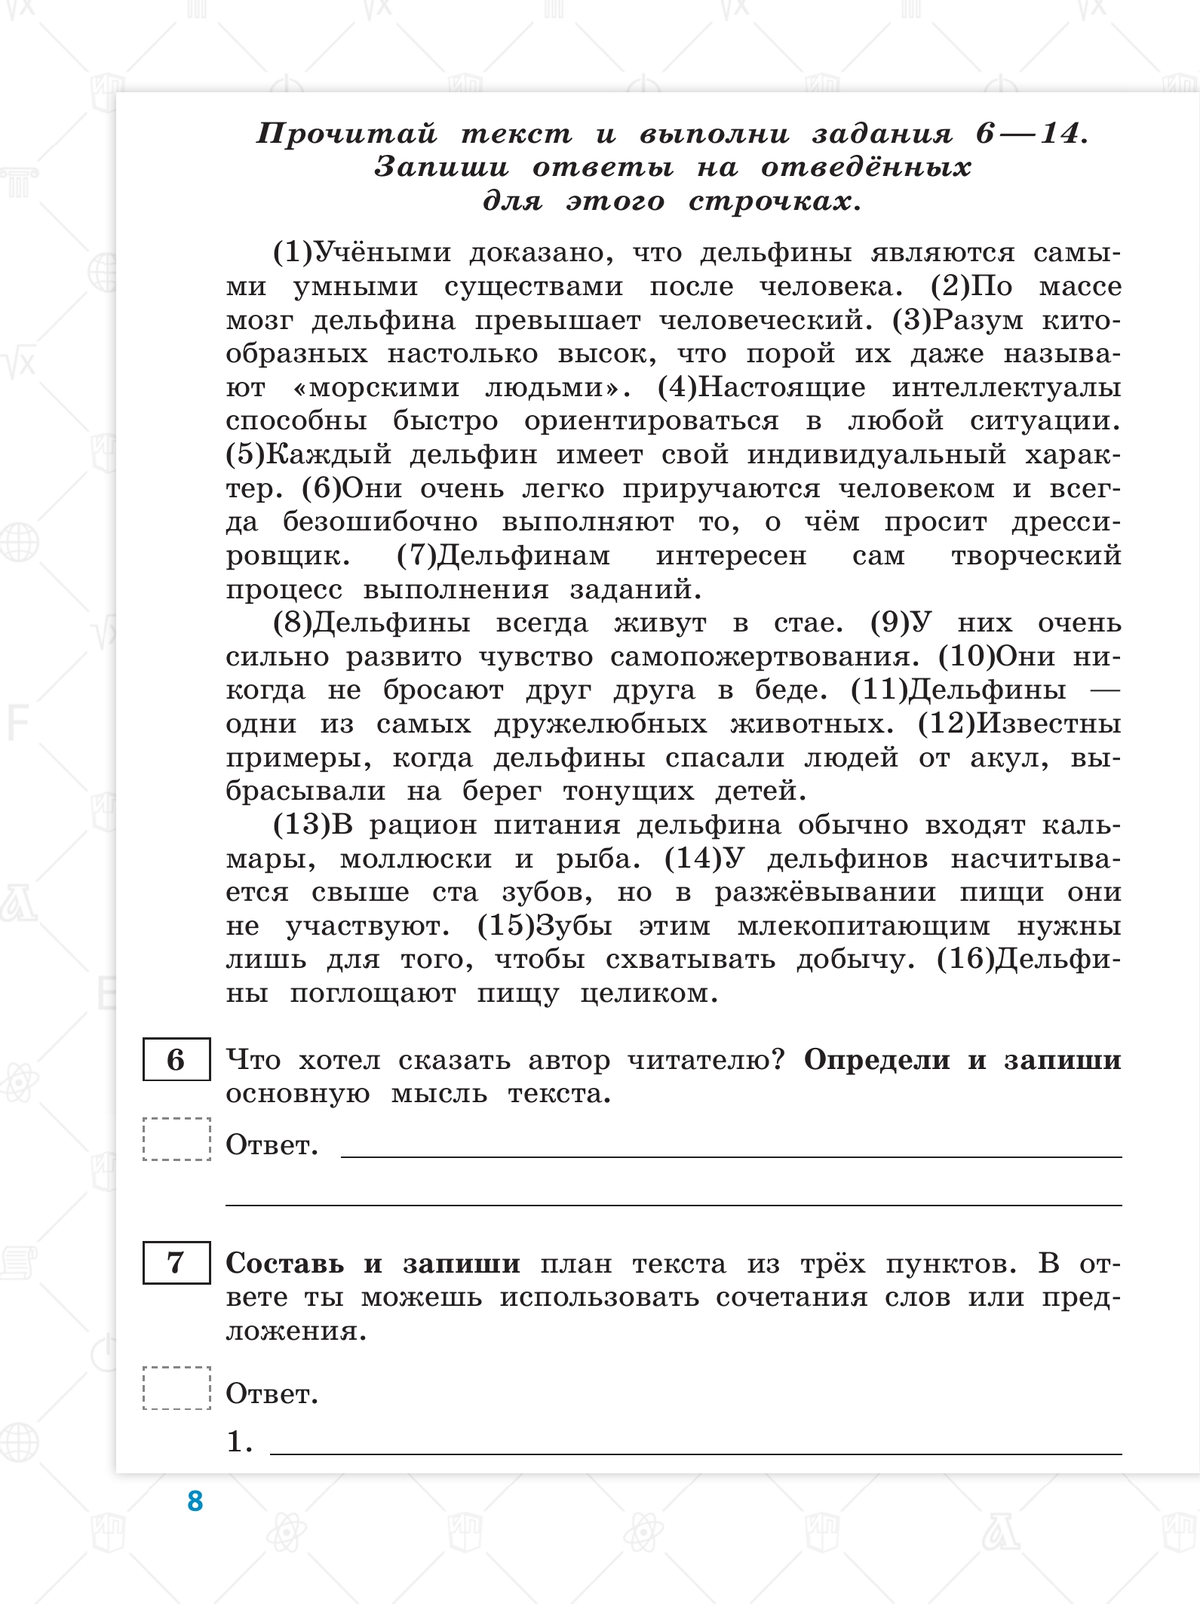 Всероссийские проверочные работы. Русский язык. 10 типовых вариантов. 4 класс 2